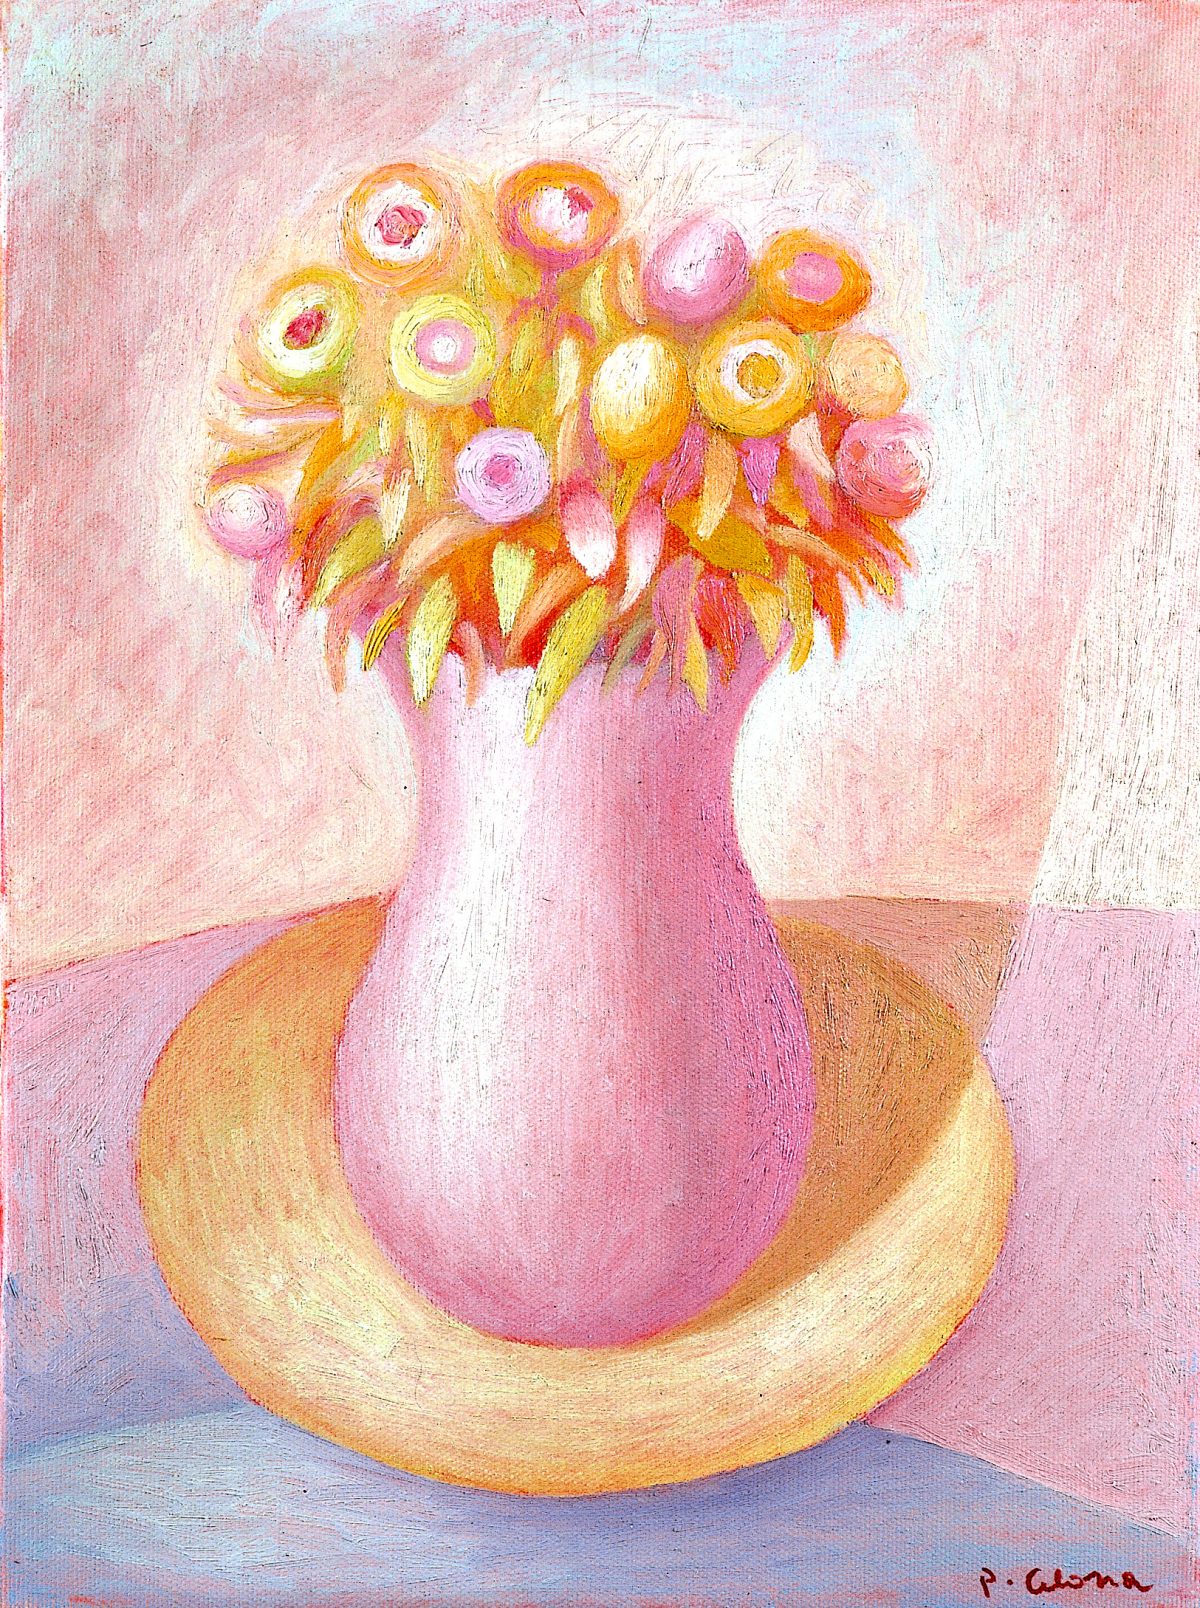 Vaso e fiori, 1994
Olio su tela, 40 x 30 cm,
Collezione privata,
NMV117